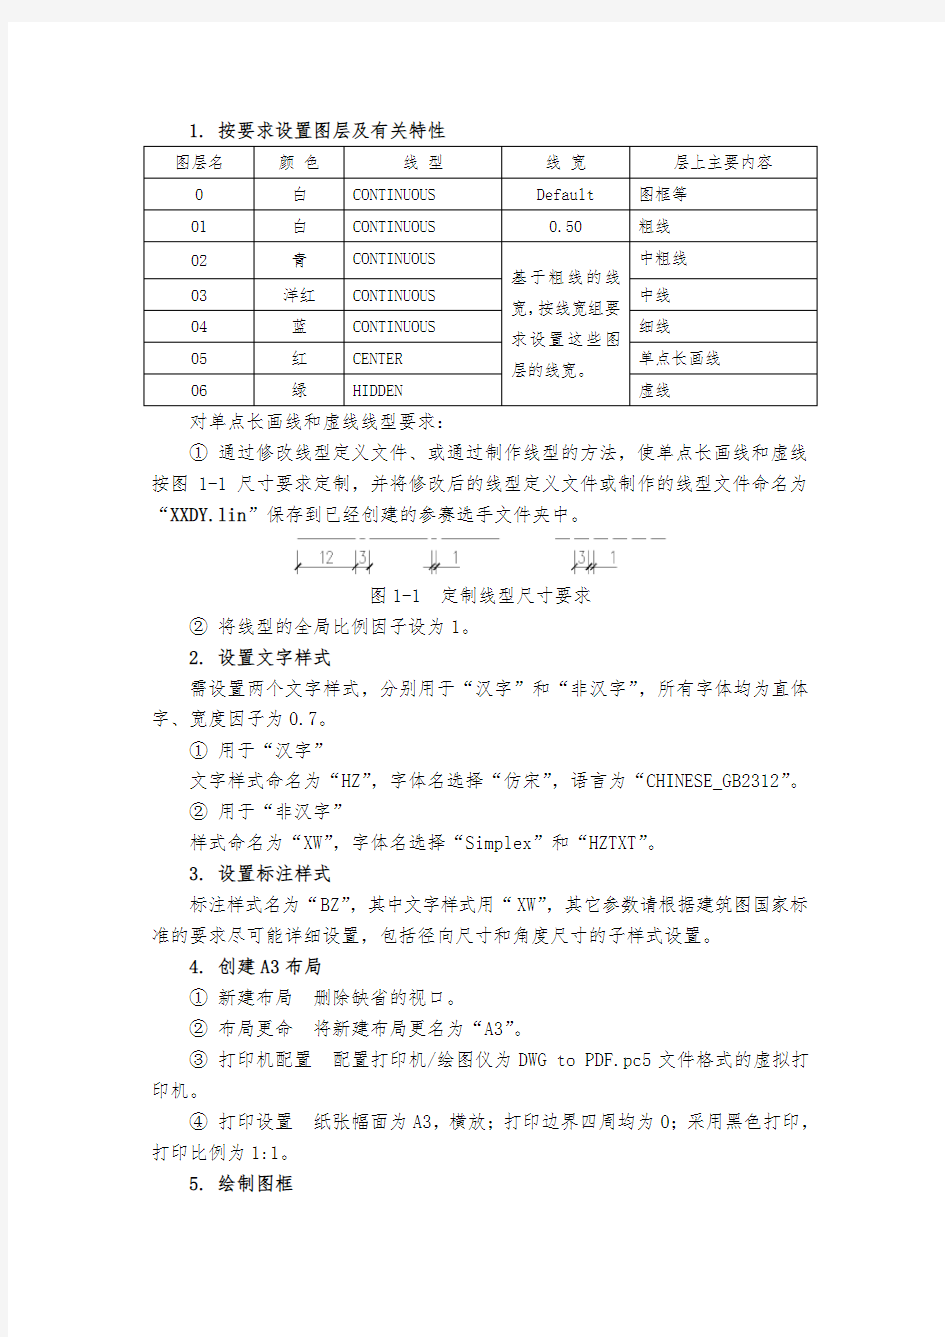 2018江苏省职业学校技能大赛建筑CAD项目技能任务书(样题)